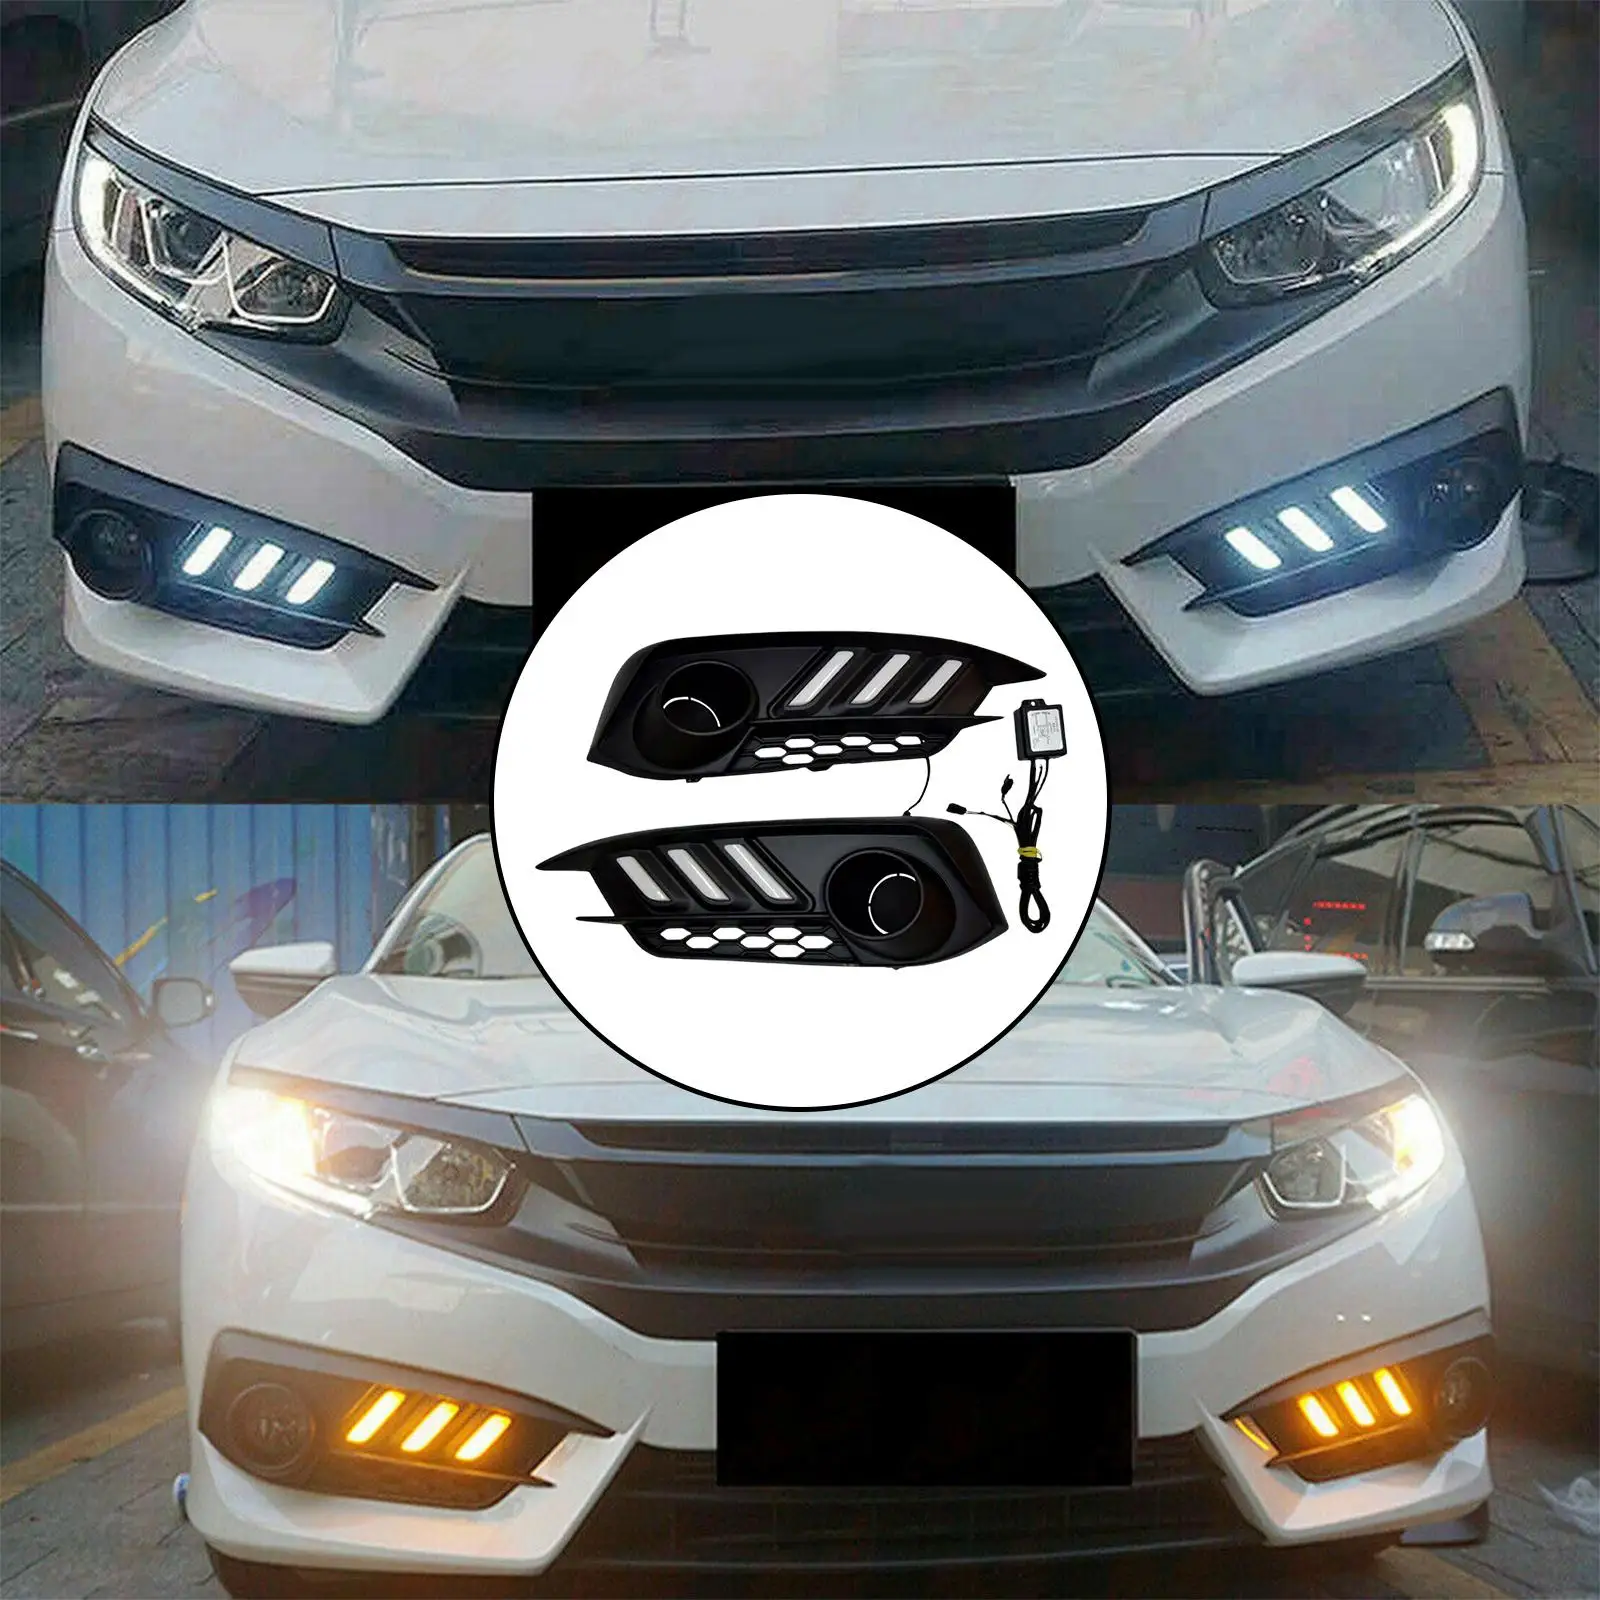 2x LED Daytime Running Light Assembly for Honda Civic 10TH Gen Sedan